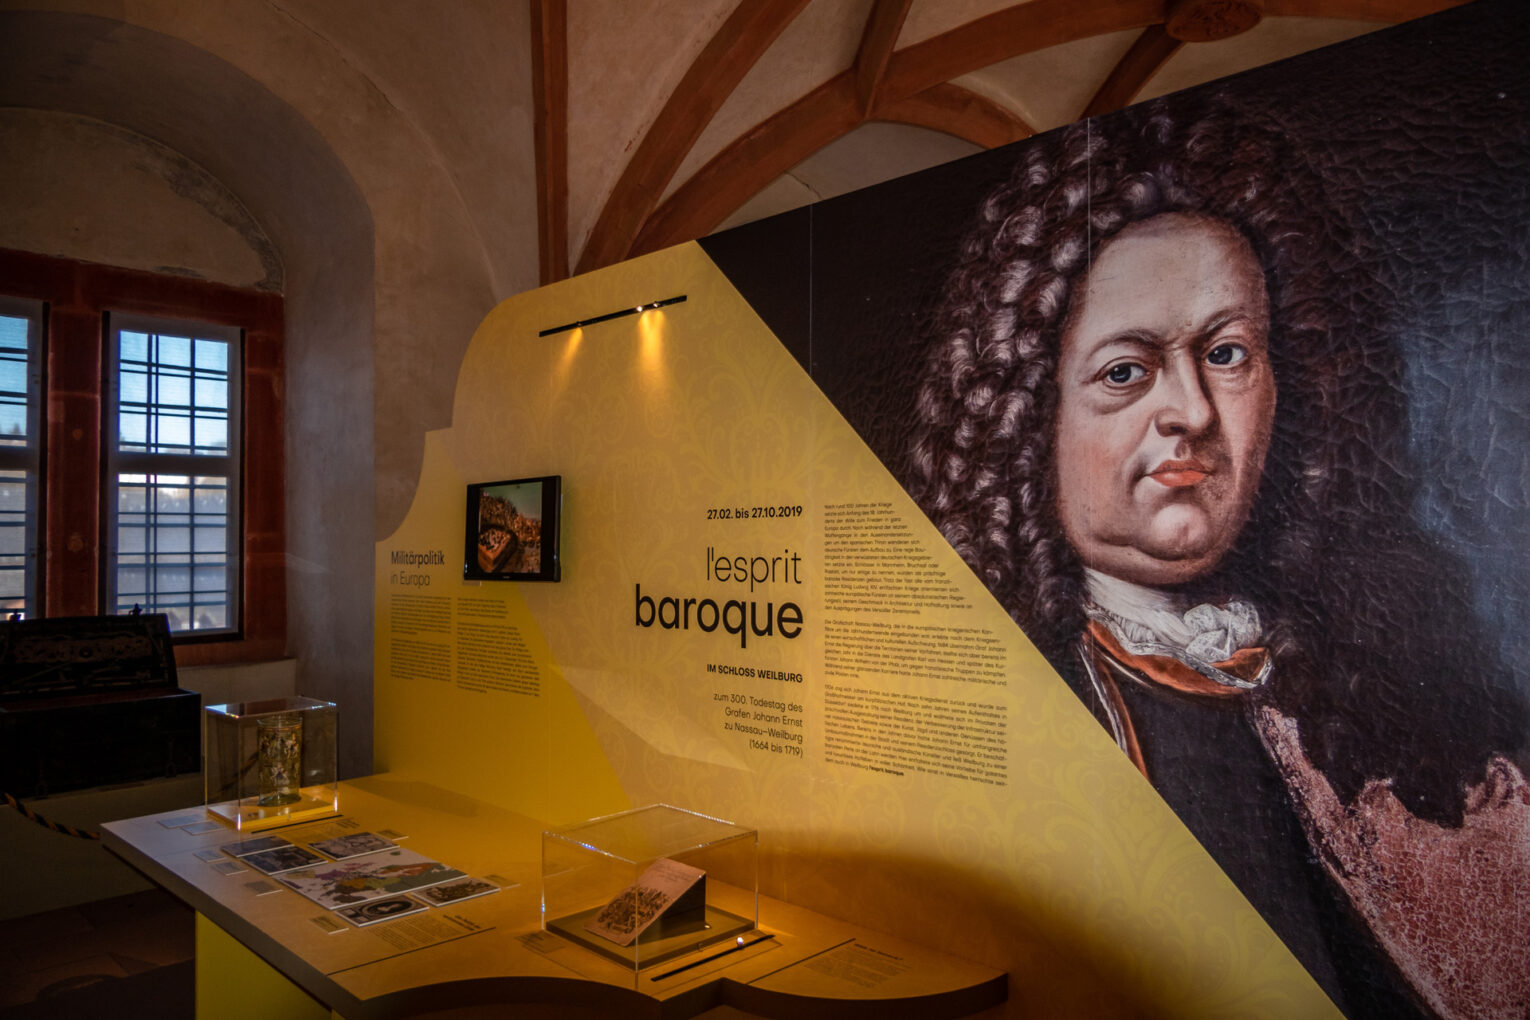 Exhibition “L’esprit baroque” in Weilburg Palace